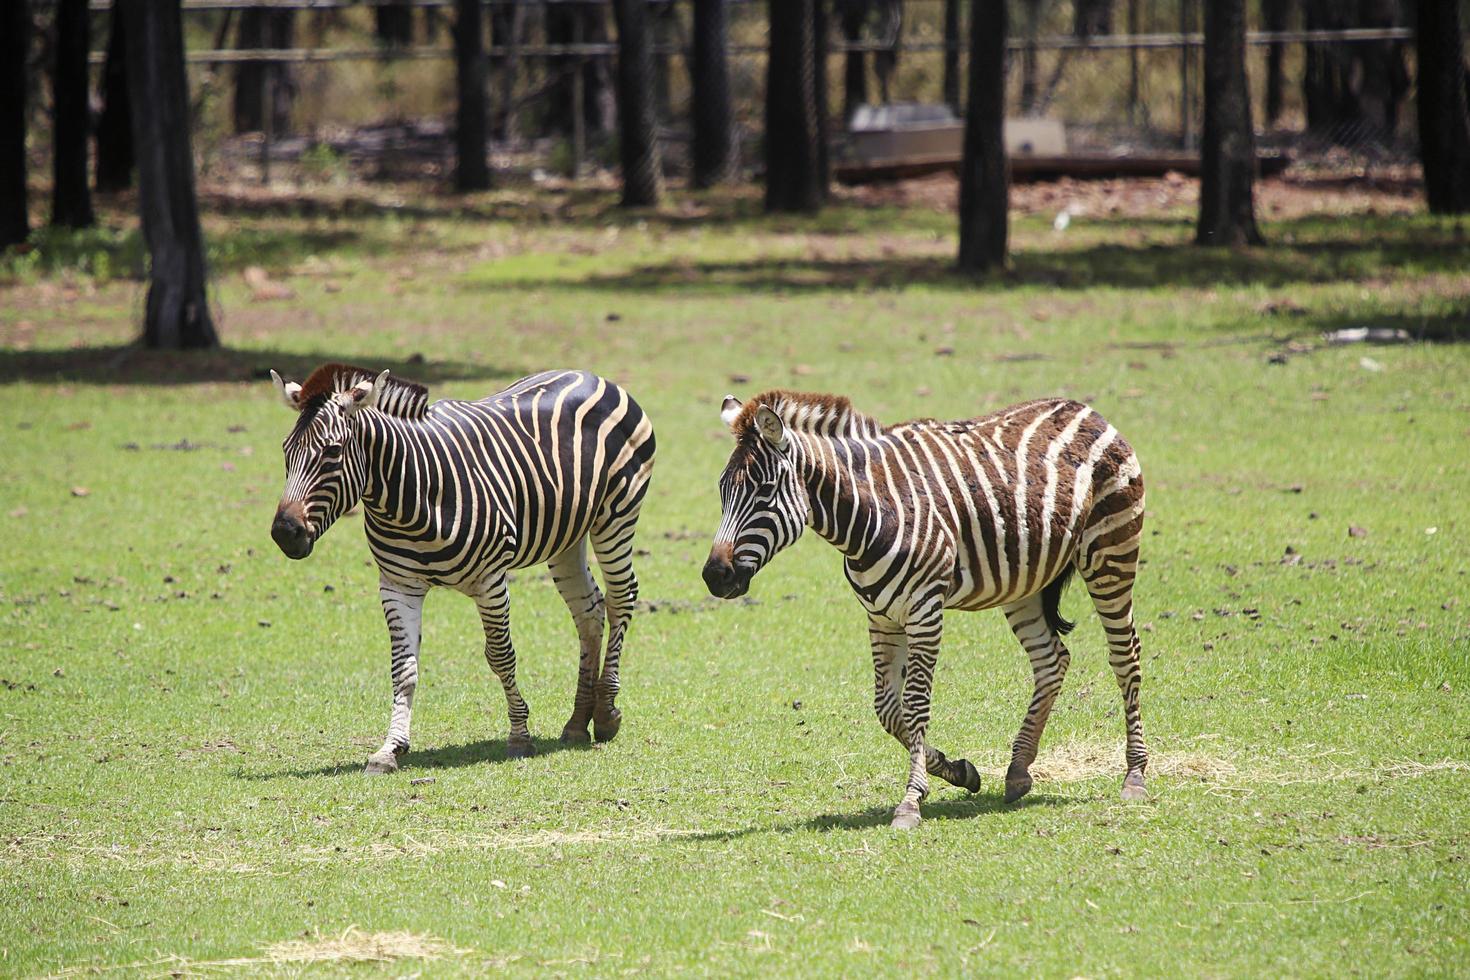 dubbo, australië, 4 januari 2017 - vlaktes zebra uit taronga dierentuin in sydney. deze stadsdierentuin werd geopend in 1916 en heeft nu meer dan 4000 dieren foto